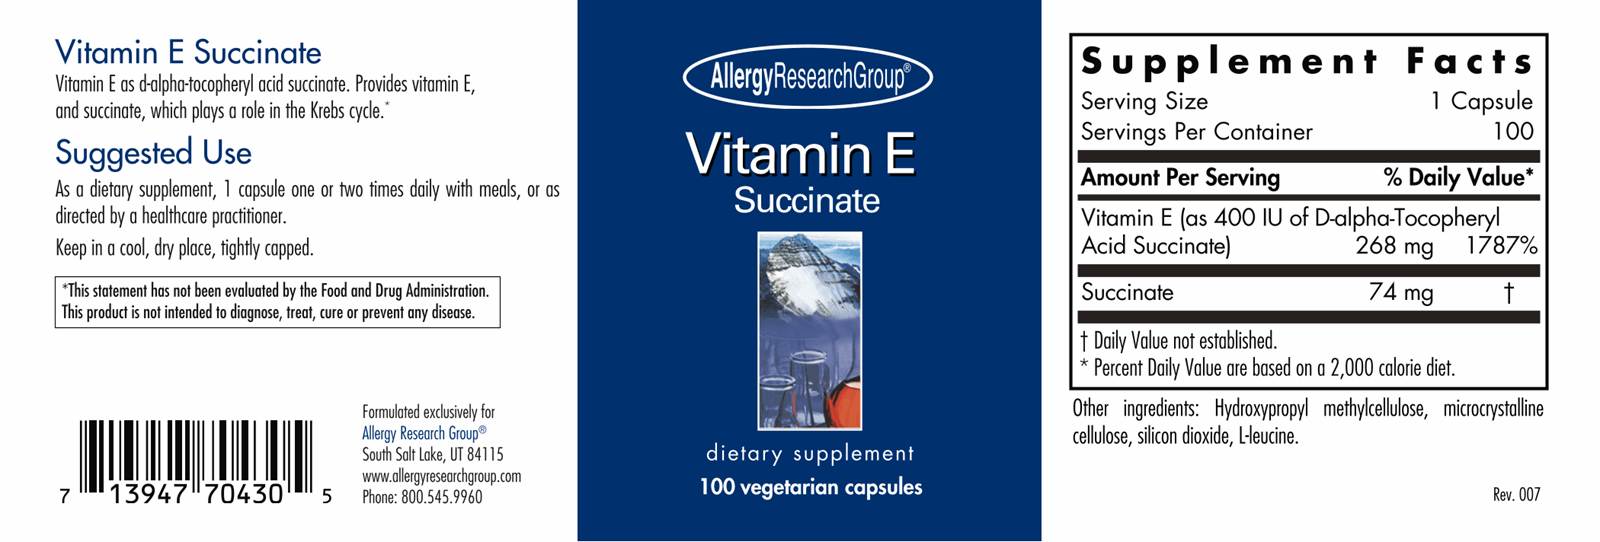 Vitamin E Succinate 